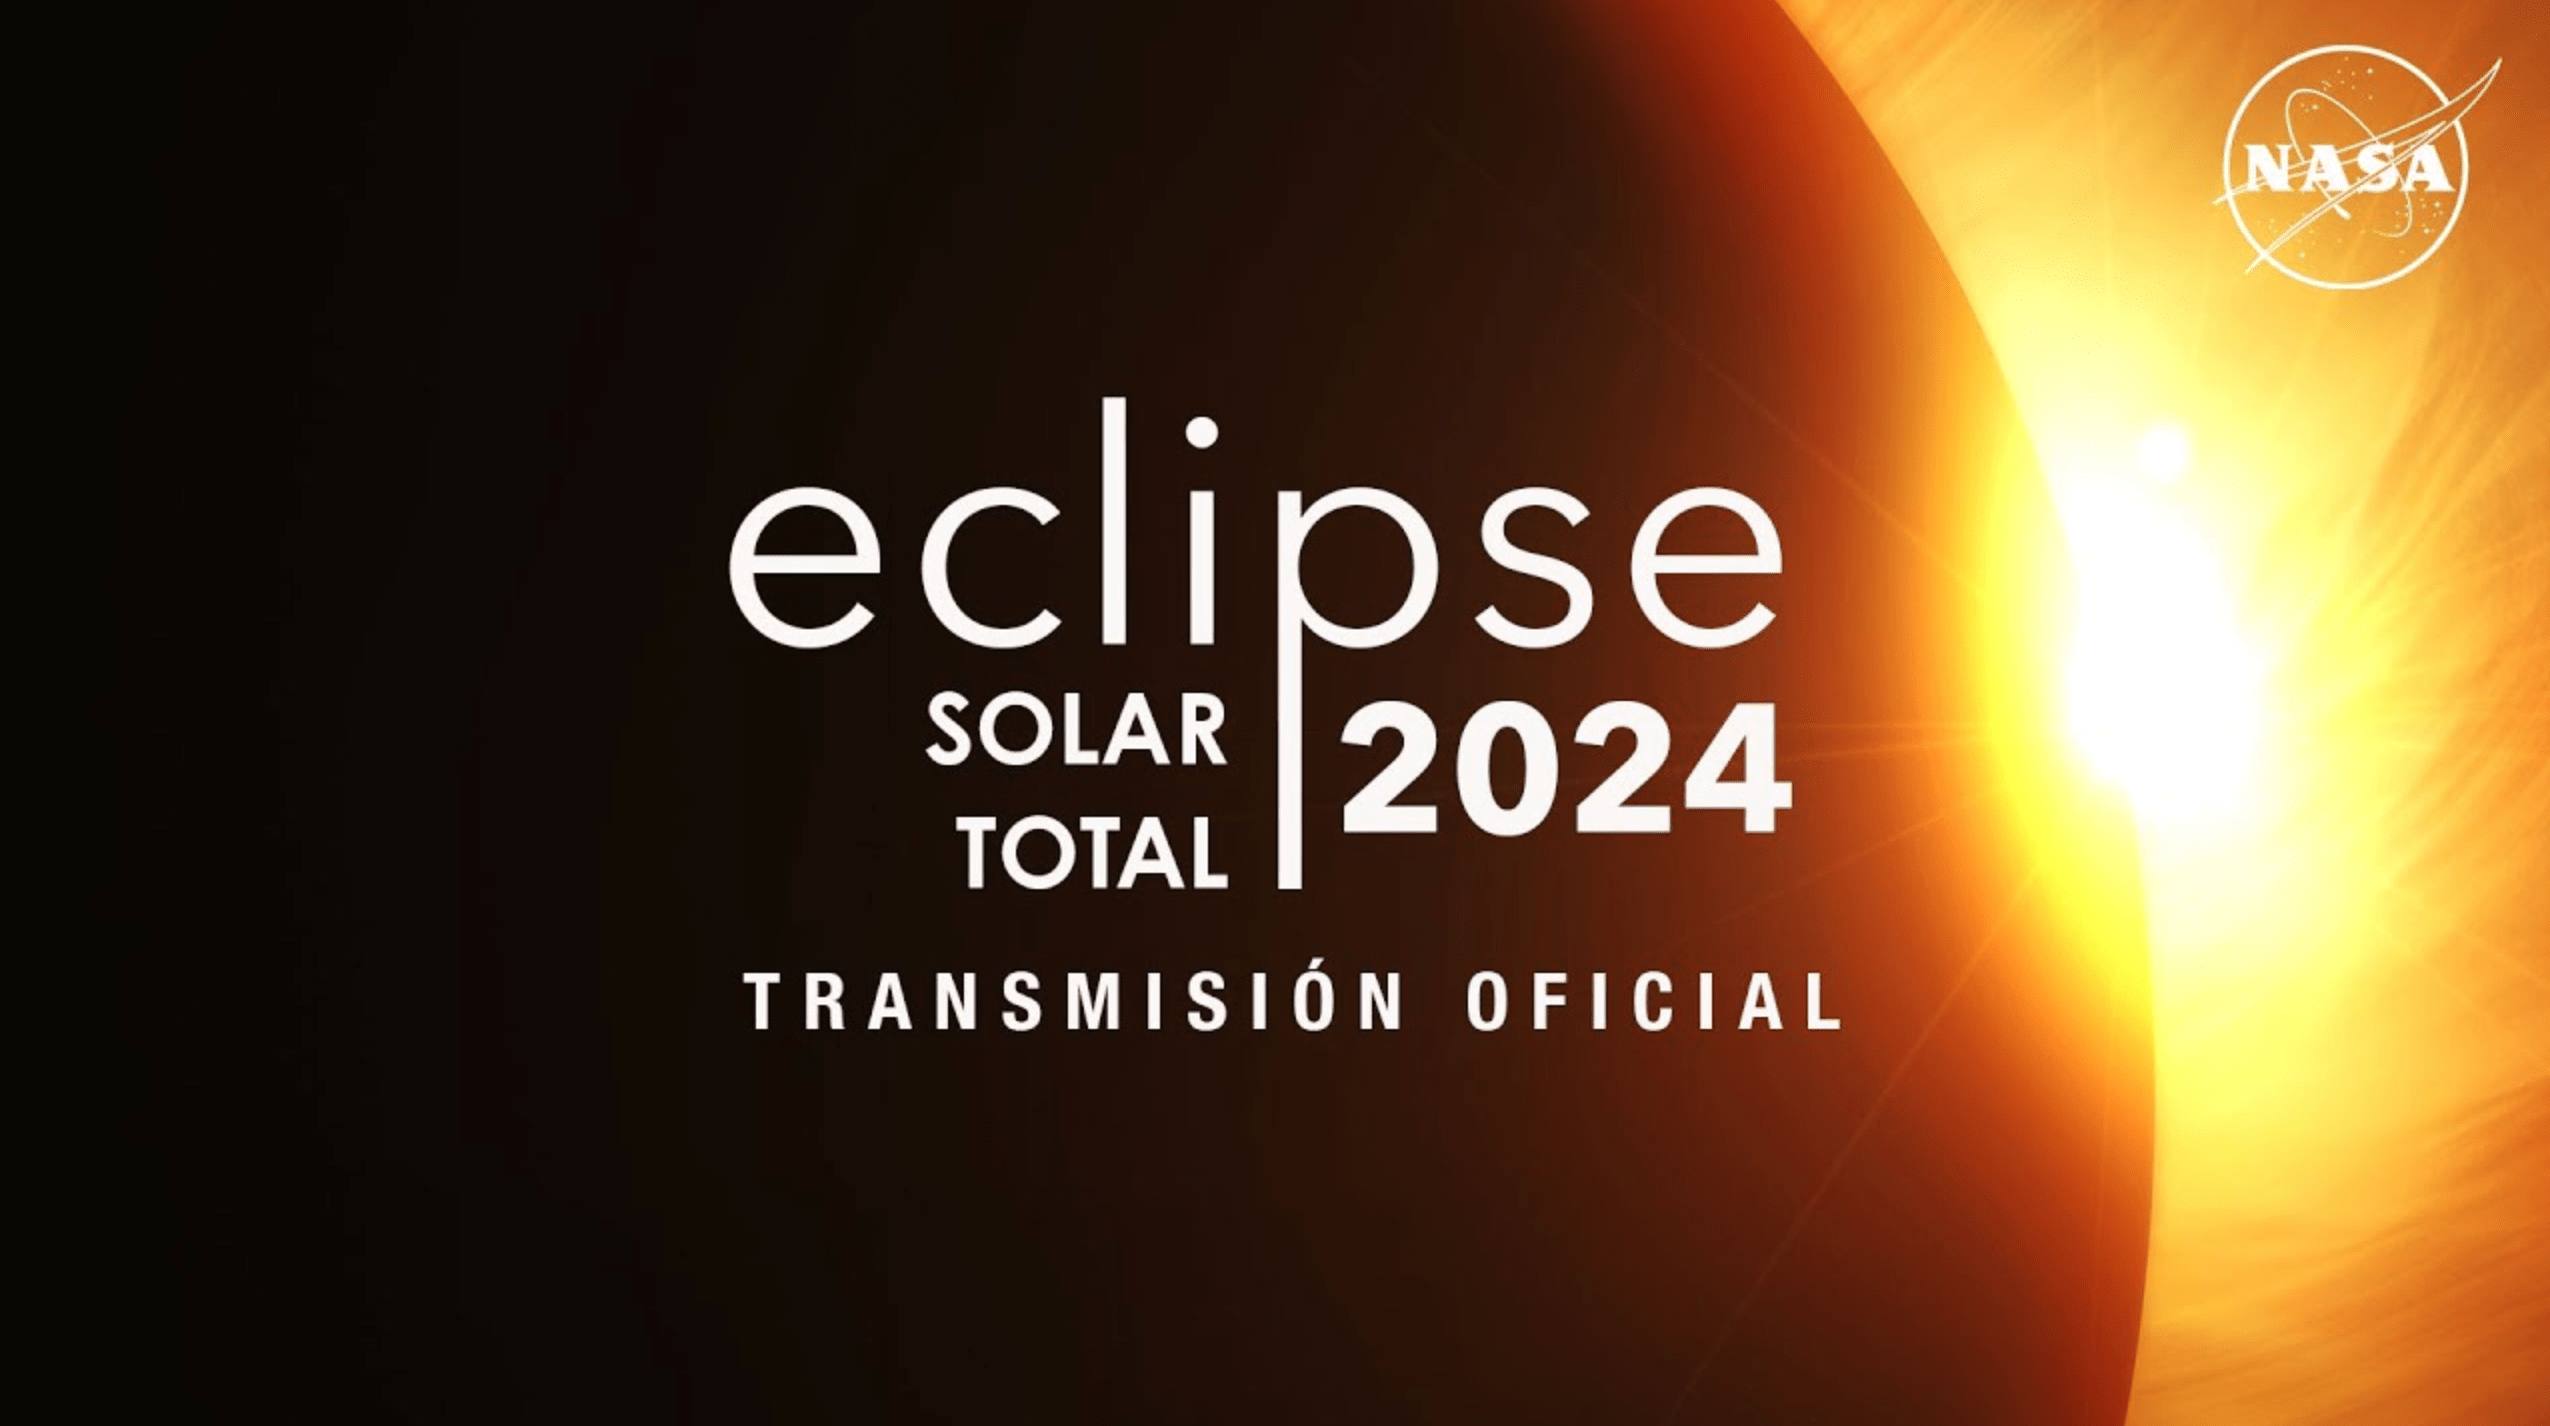 Thumbnail de la transmisión de NASA en español del eclipse solar total del 8 de abril.